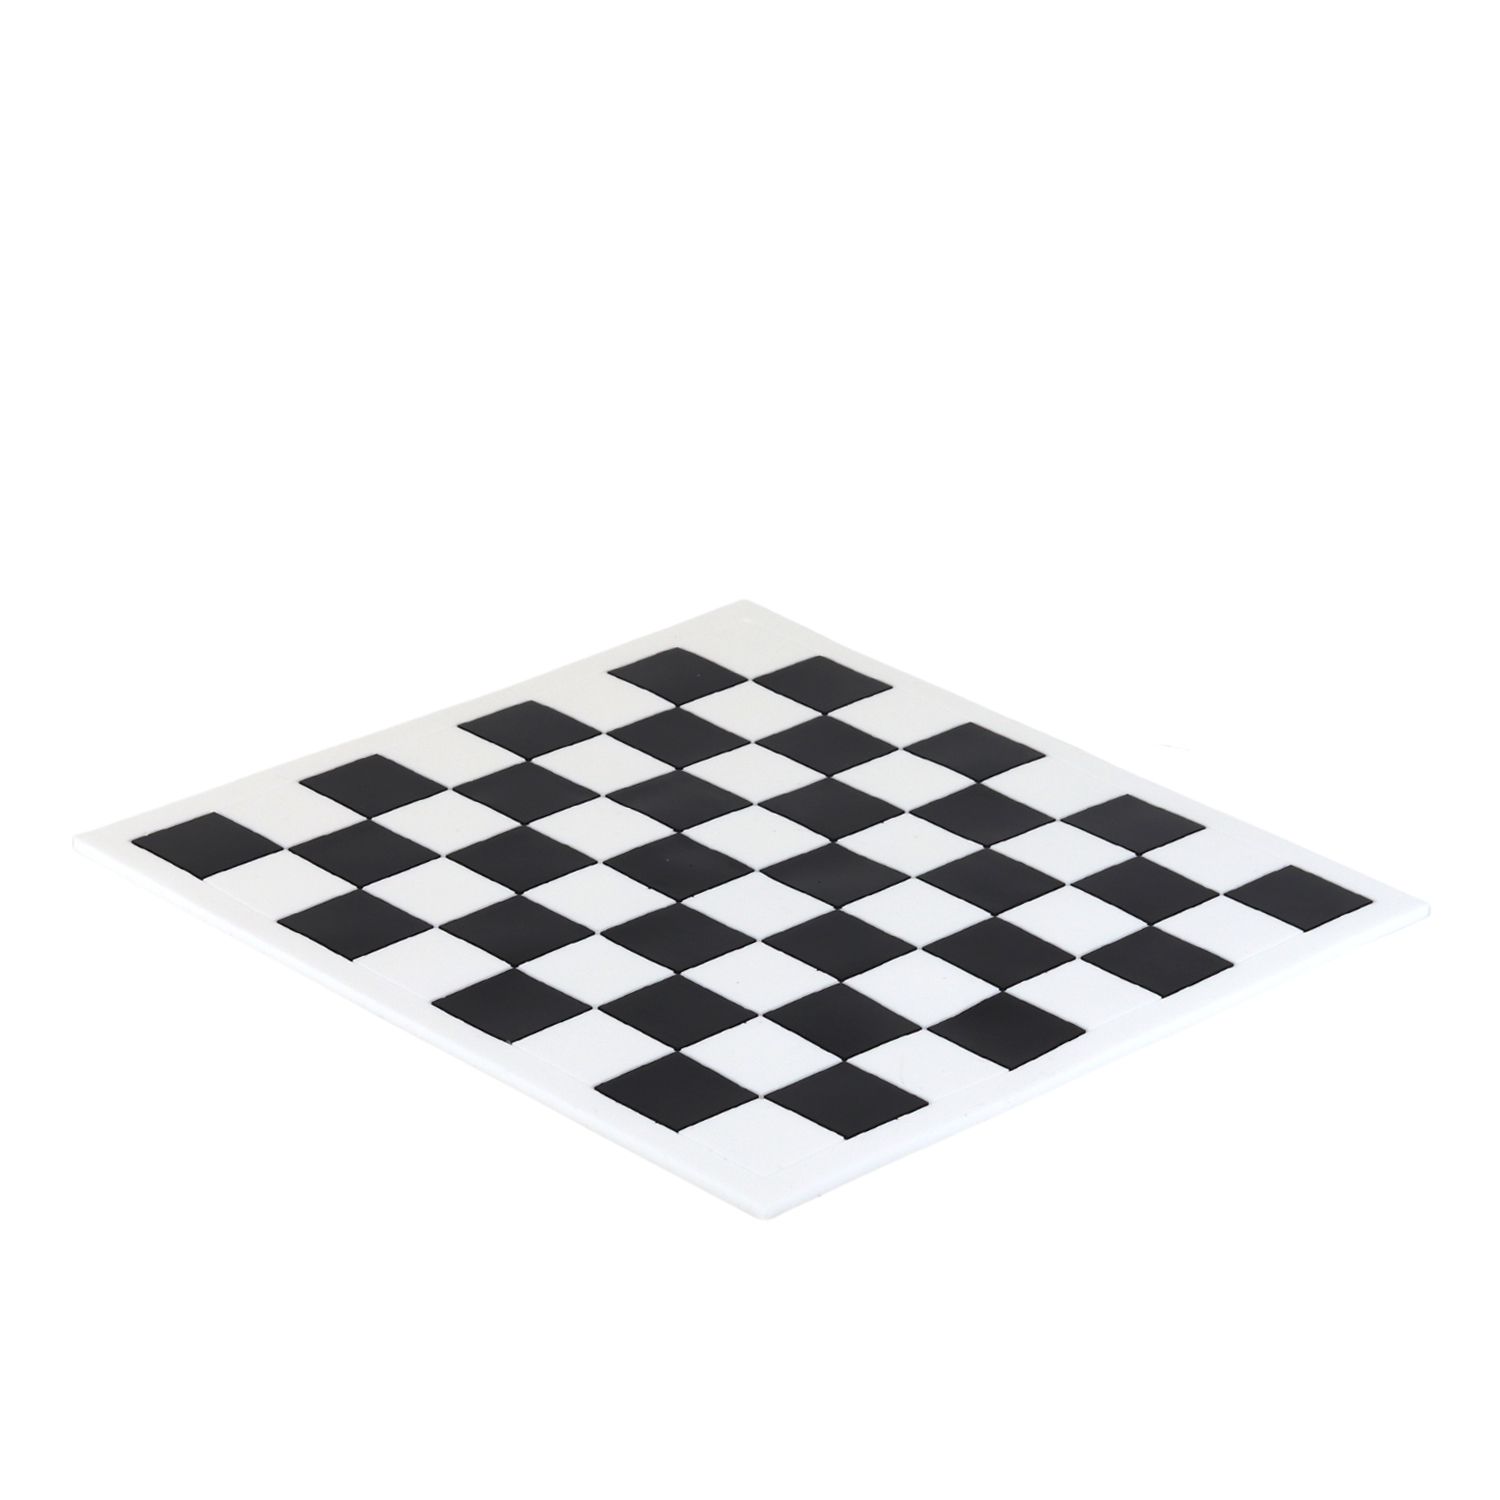 epoxy schaakbord resultaat